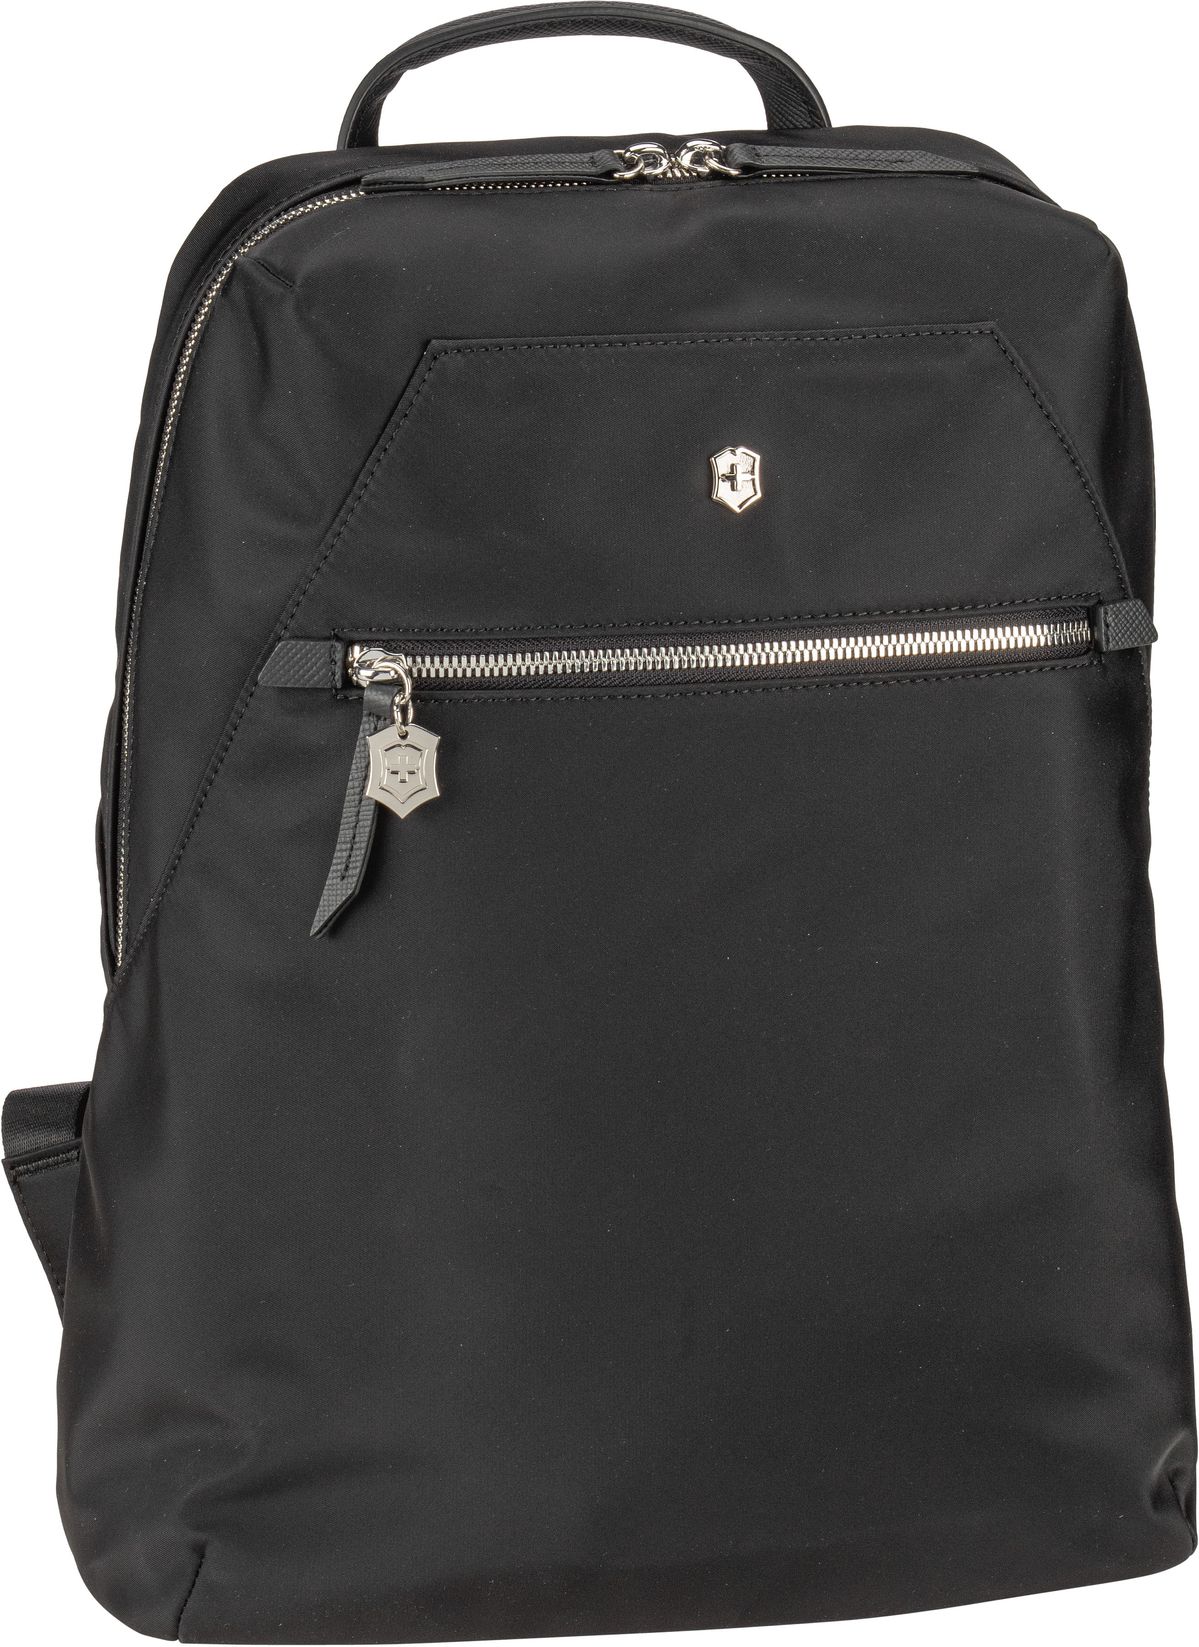 Victorinox Victoria Signature Compact Backpack  in Schwarz (16 Liter), Rucksack / Backpack